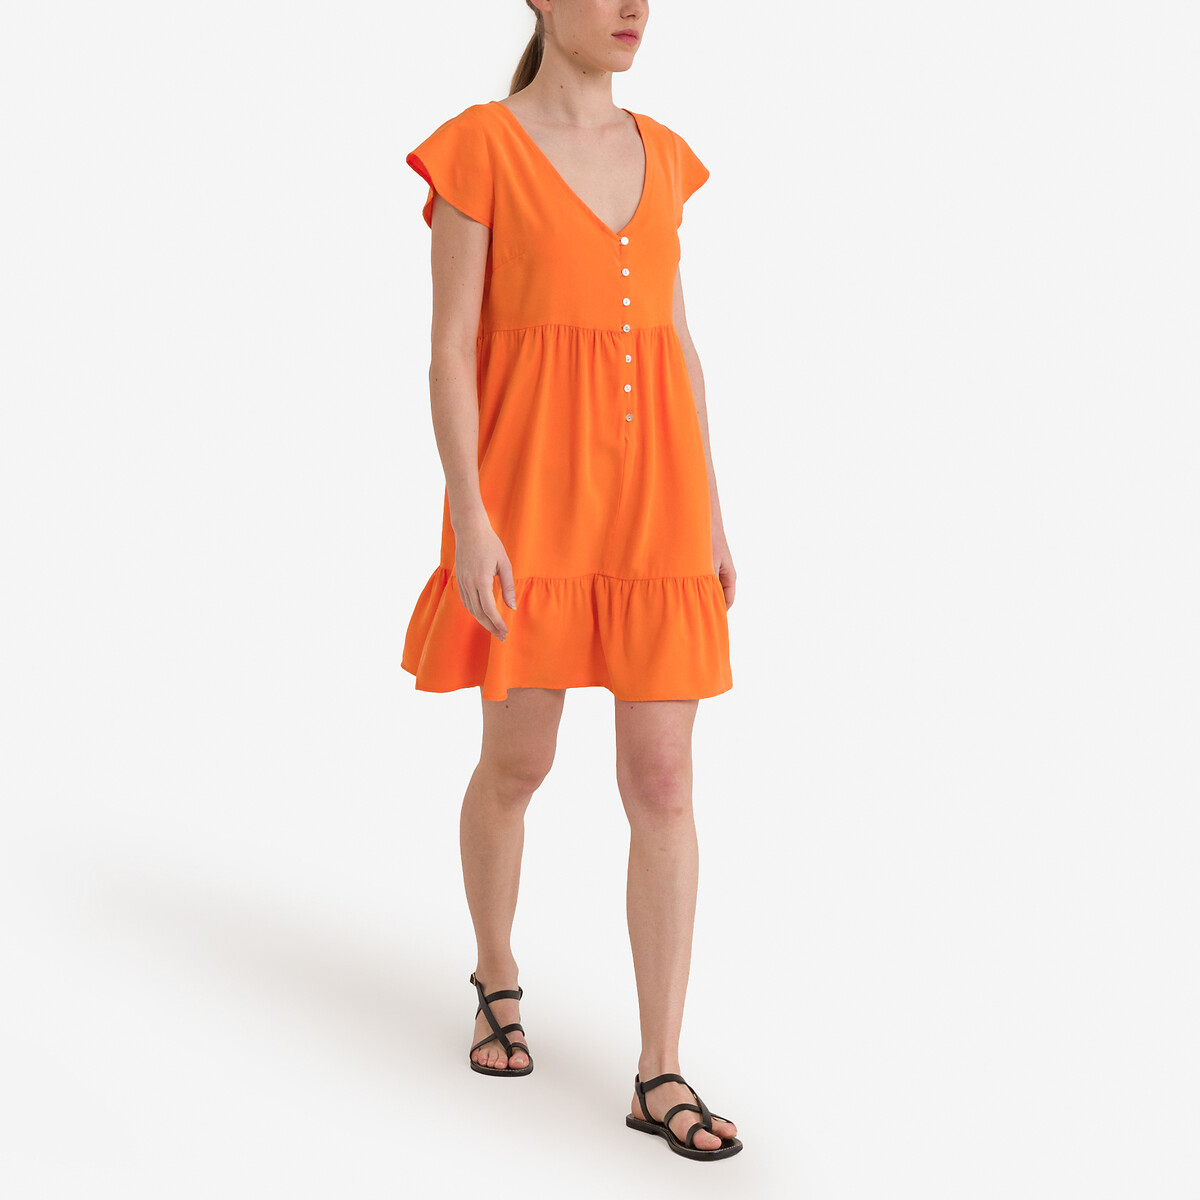 Kleid mit Only ärmeln La Redoute | kurzen orange